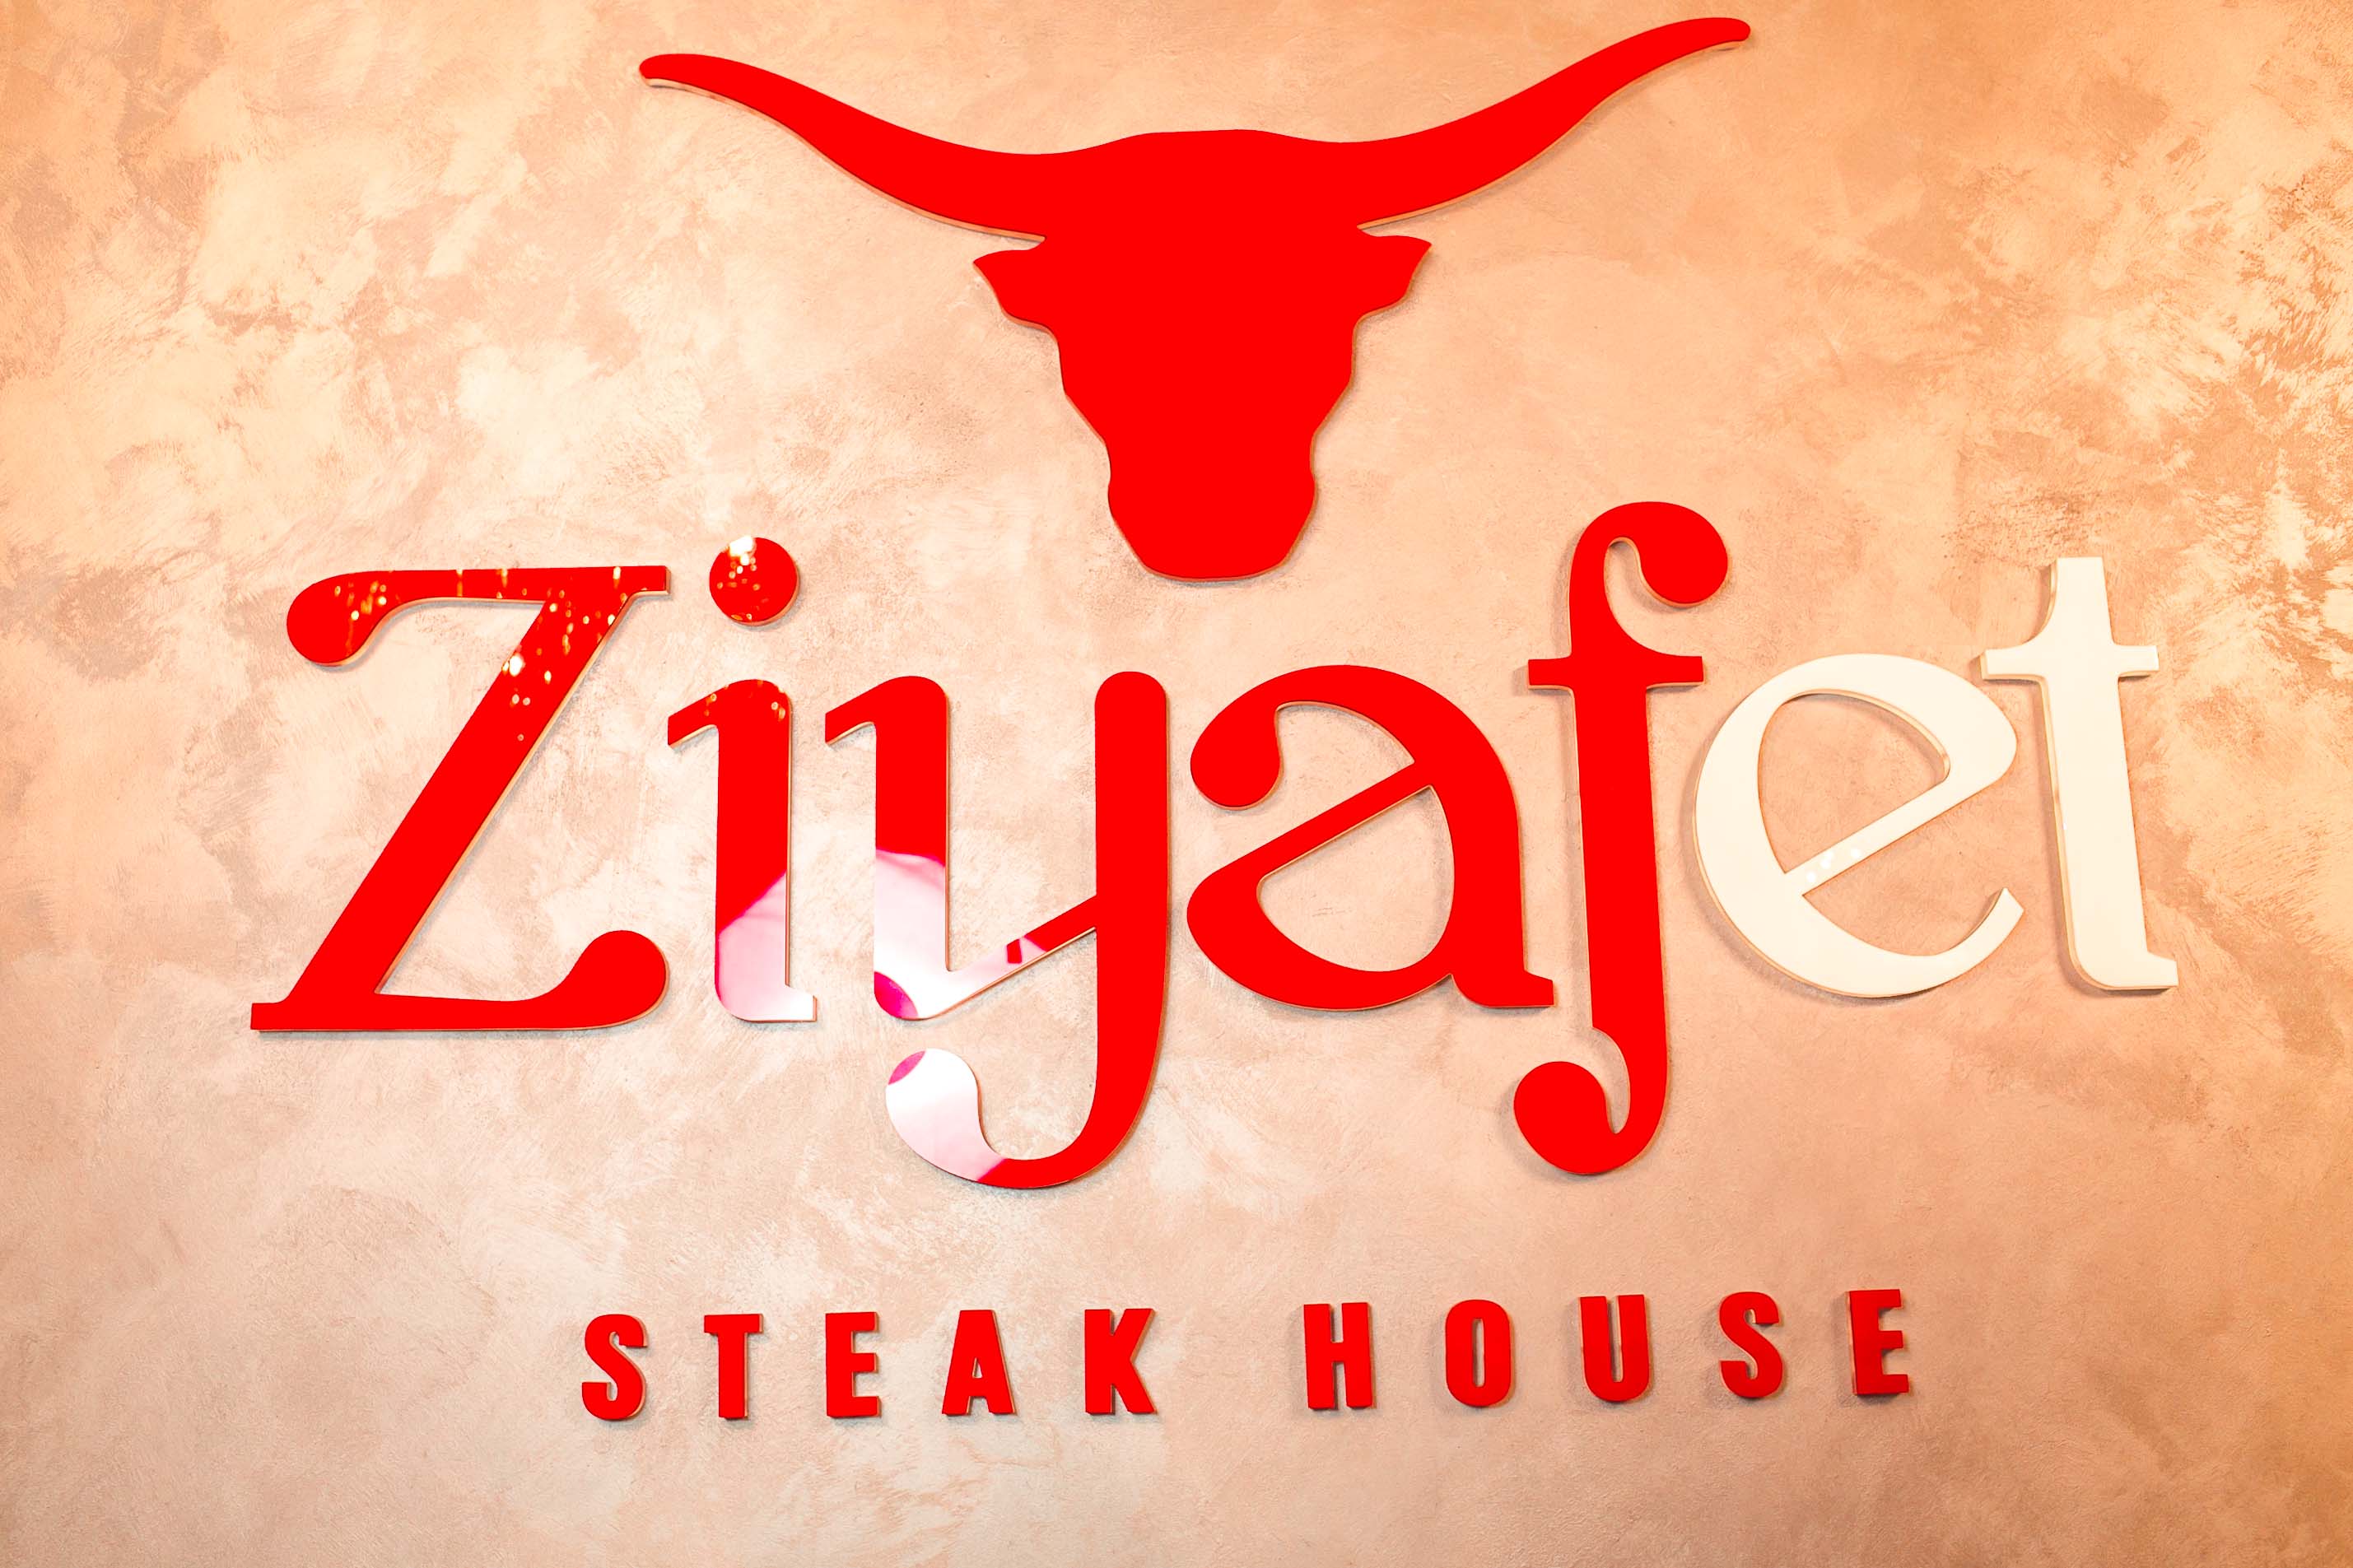 Steak house "ZIYAFET"